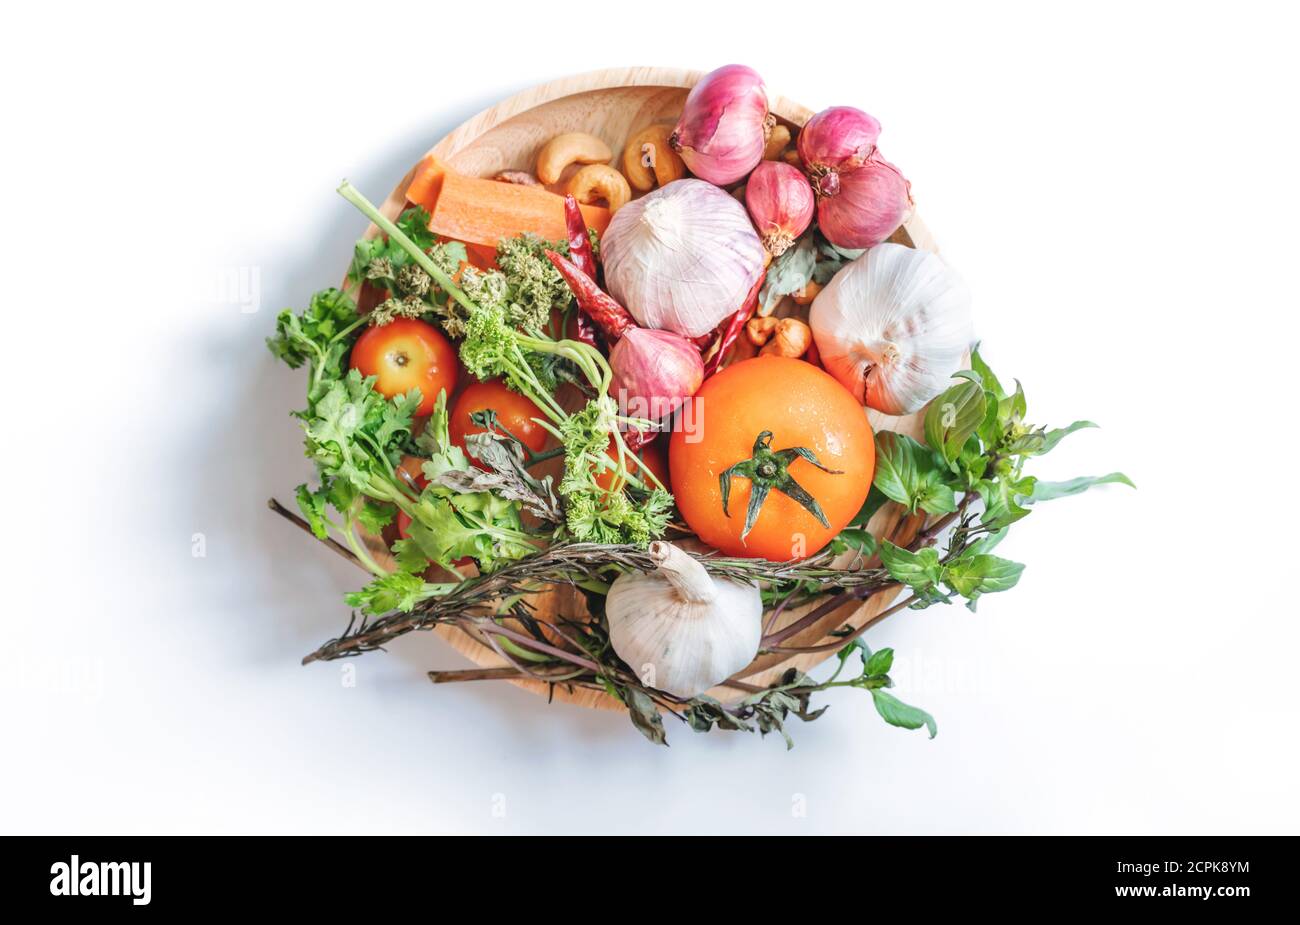 Alimentación saludable. Verduras con ingrediente de alimentos frescos sobre fondo blanco Foto de stock